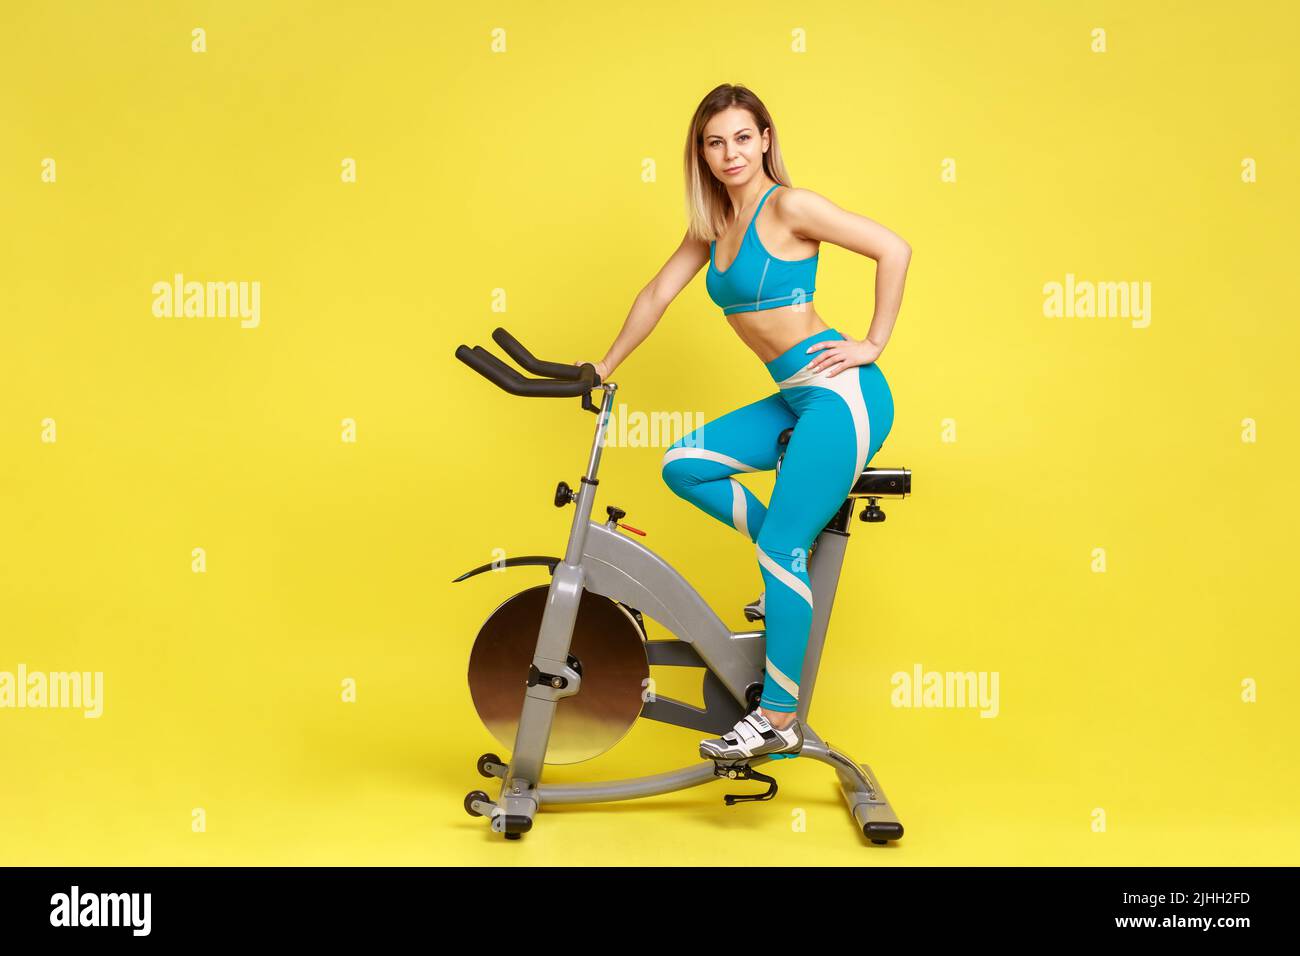 Porträt einer selbstbewussten, blonden, sportlichen Frau auf dem Heimtrainer, die Hand auf der Hüfte hält, die Kamera anschaut und blaue Sportkleidung trägt. Innenaufnahme des Studios isoliert auf gelbem Hintergrund. Stockfoto